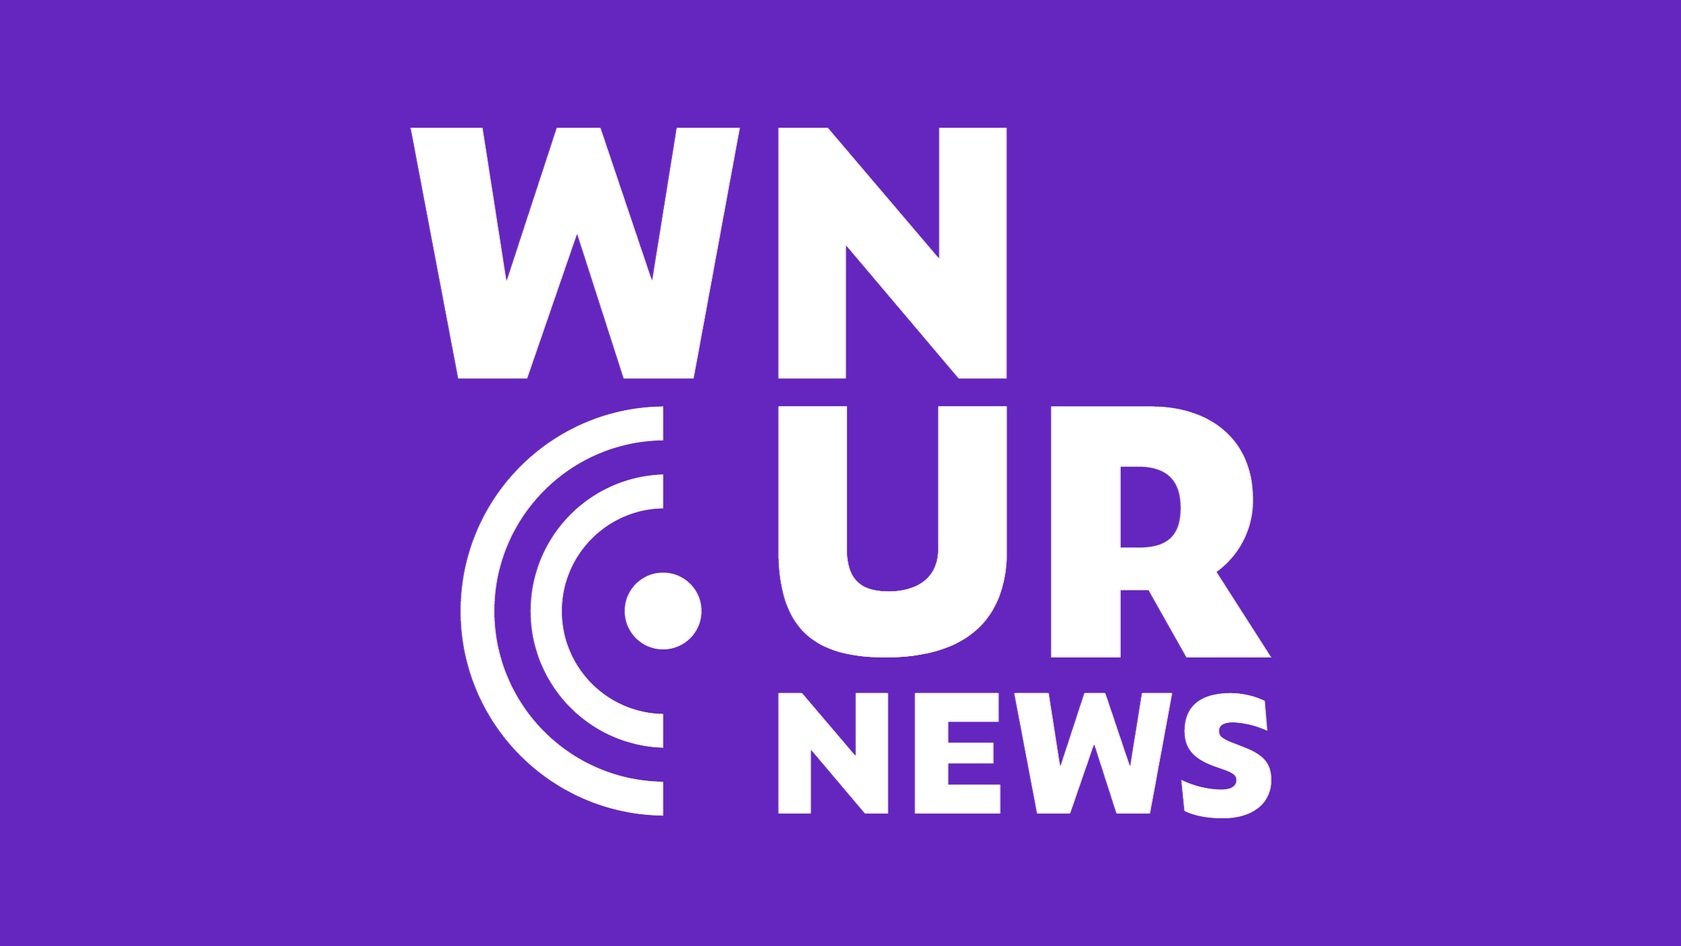 WNUR News on 89.3 FM